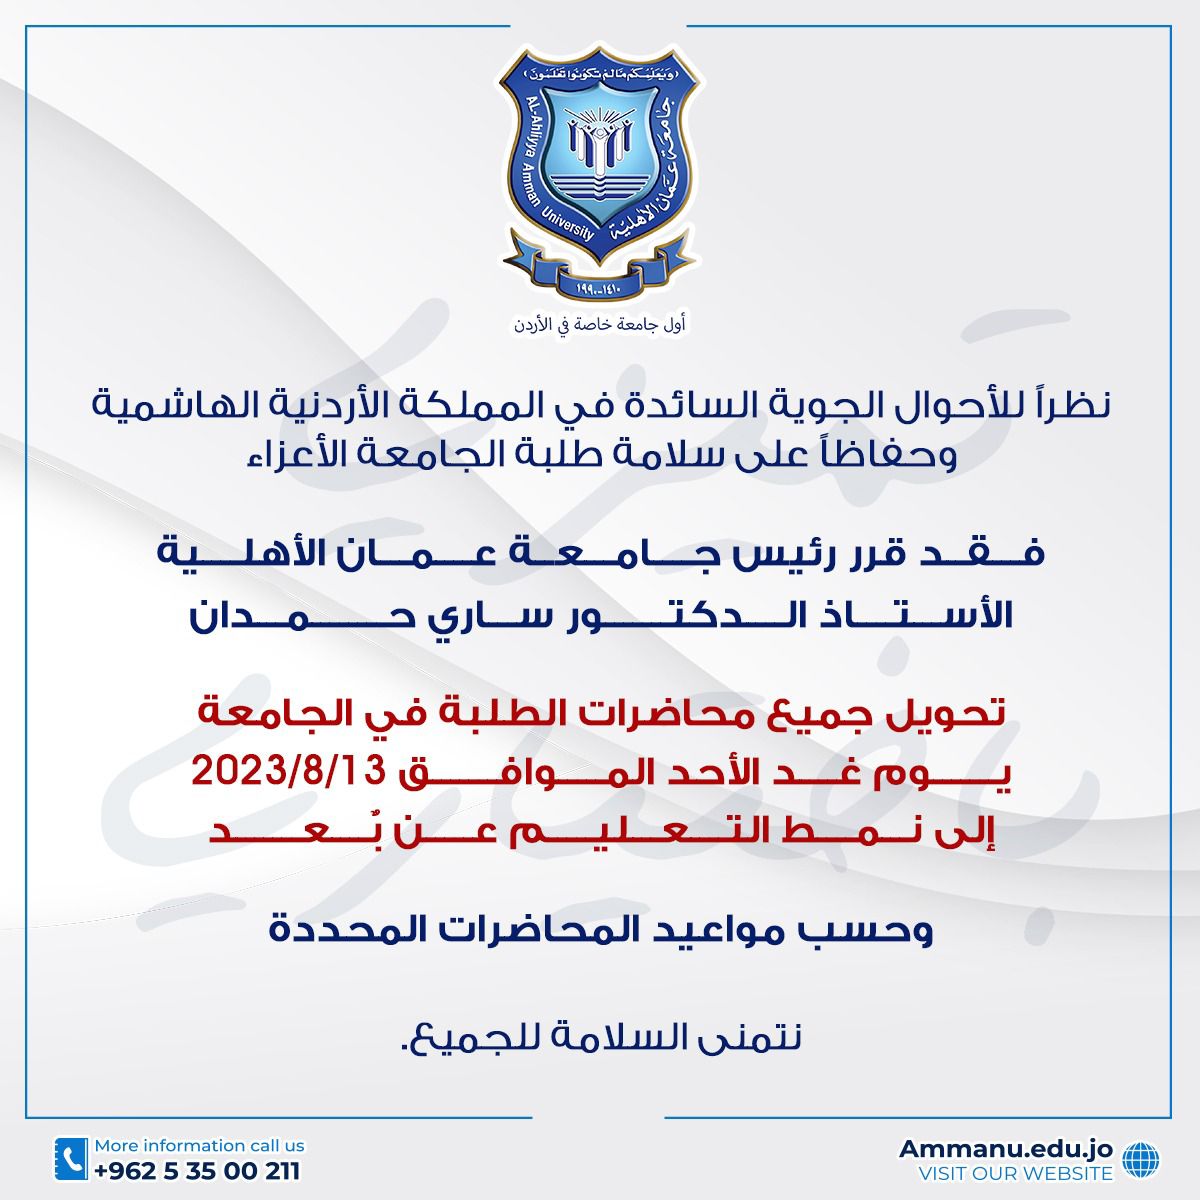 تحويل محاضرات الطلبة في عمان الاهلية يوم غدٍ الأحد إلى نمط التعليم عن بعد